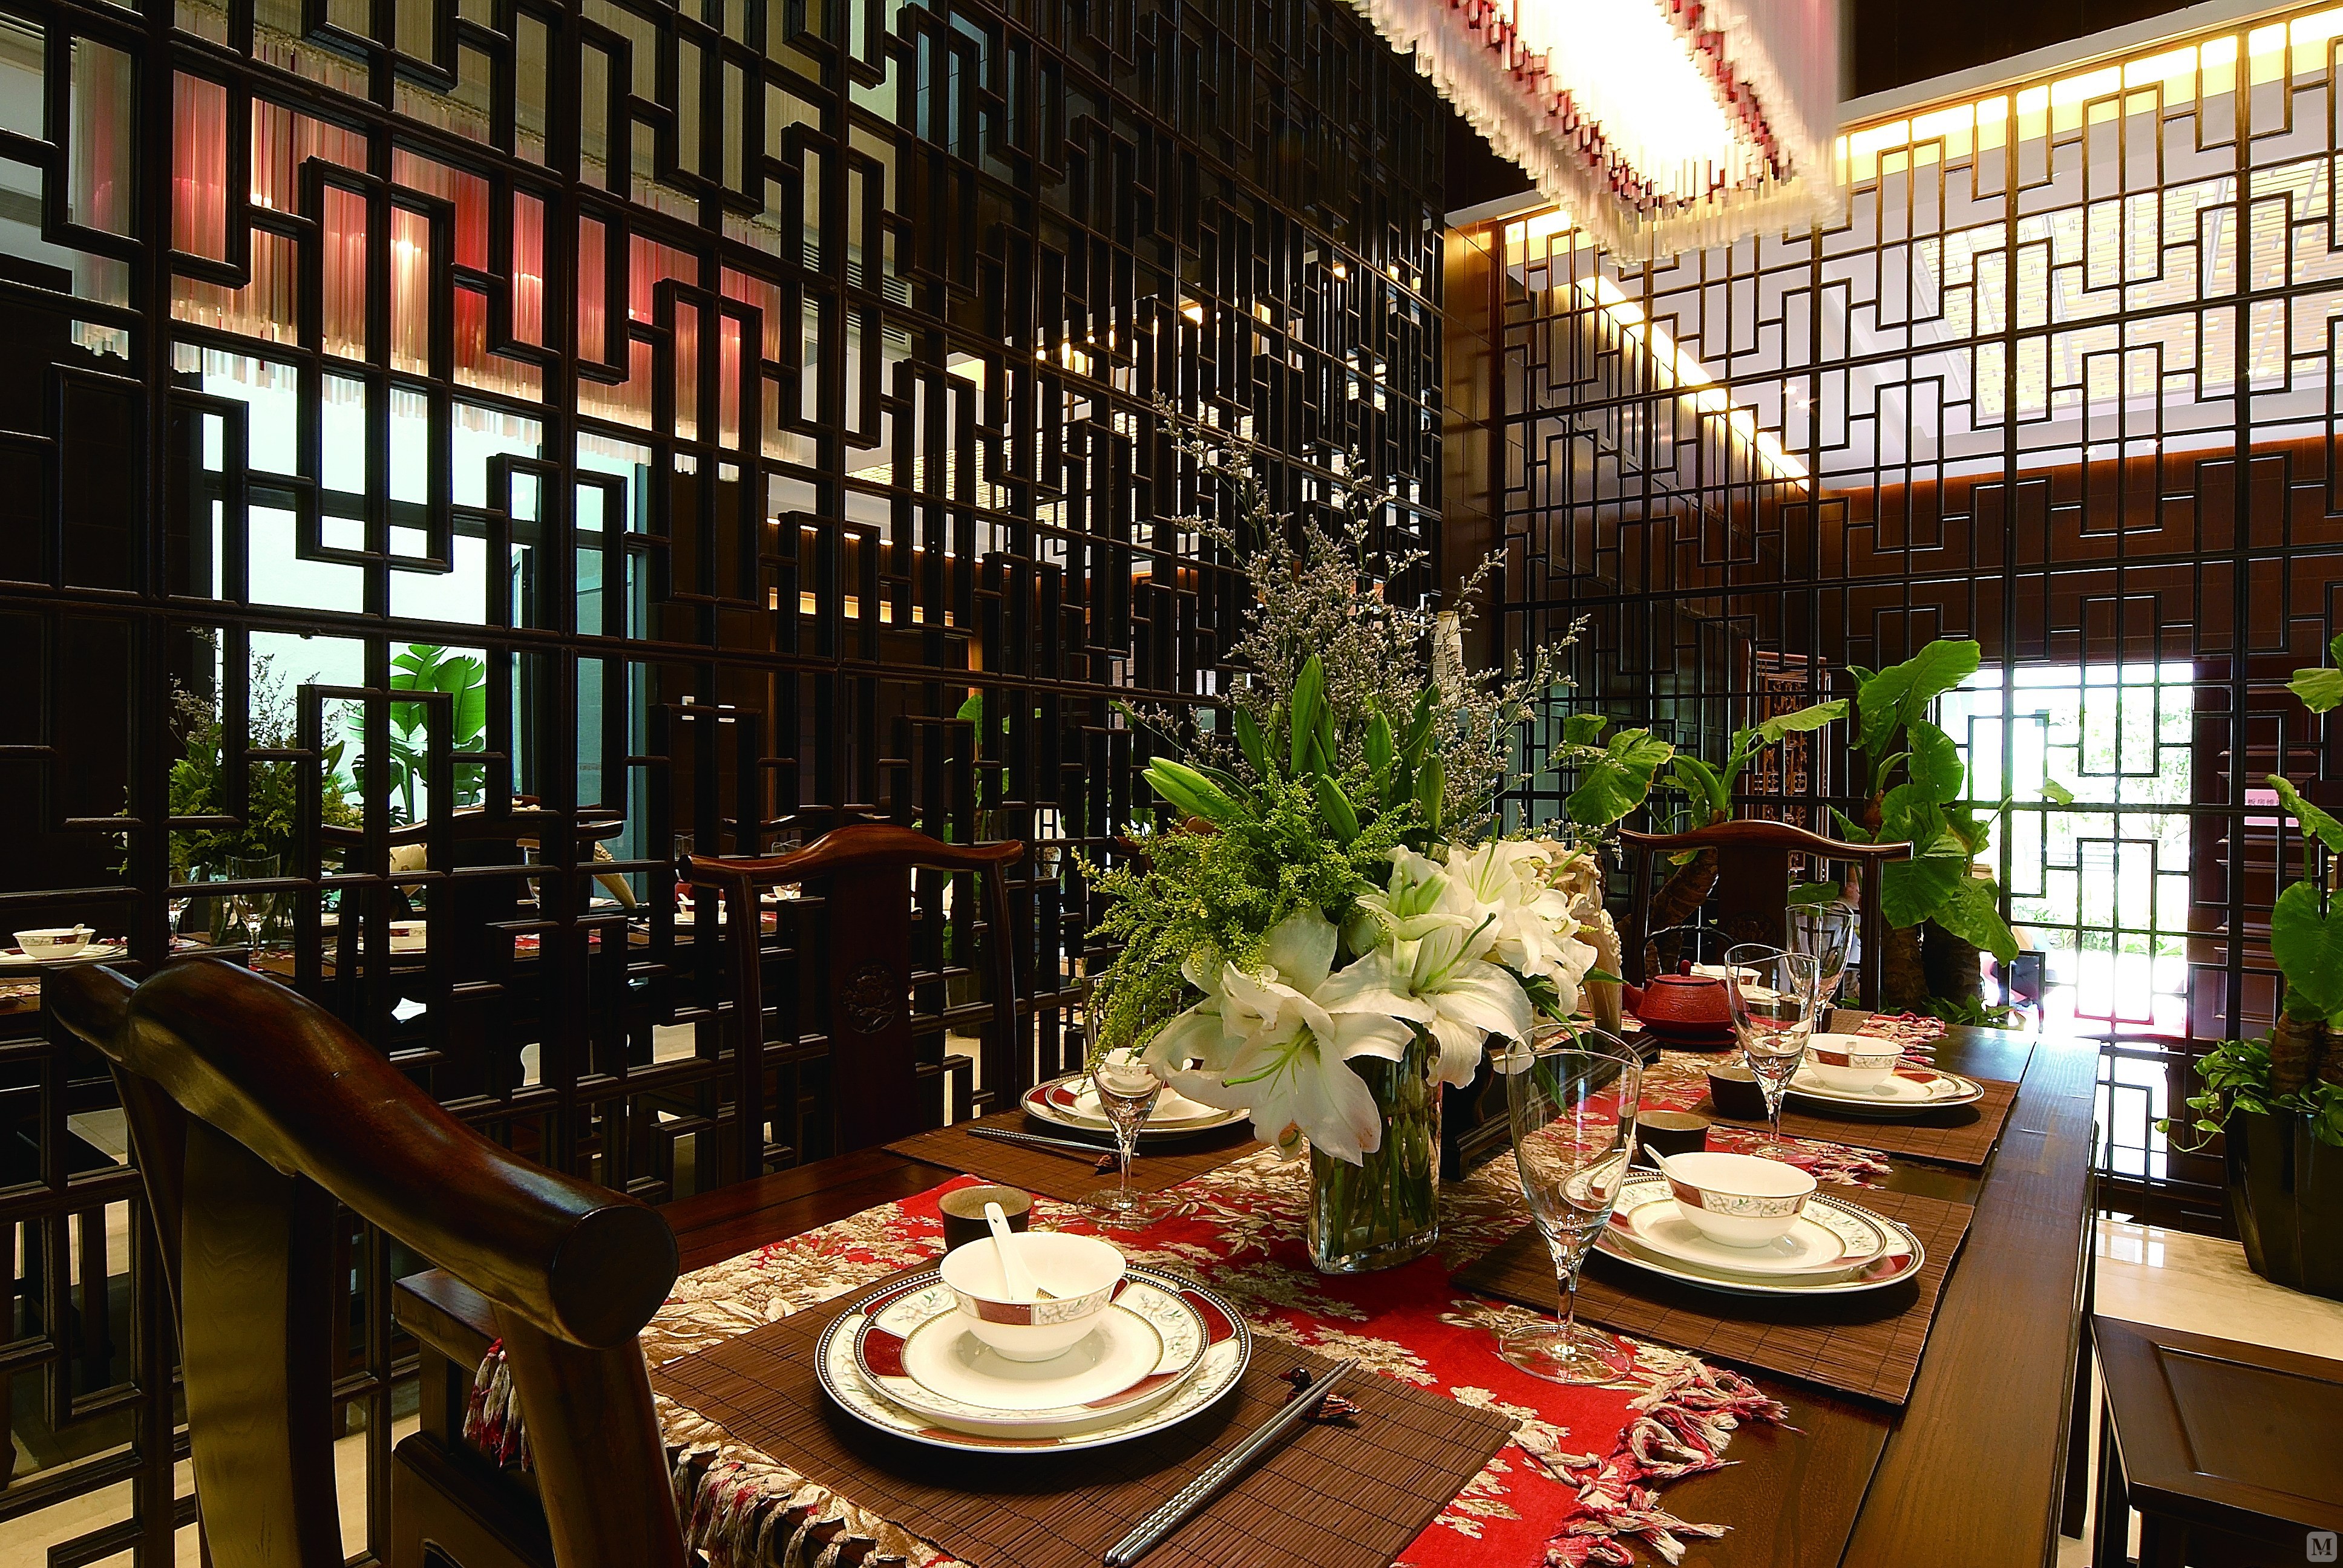 中式餐厅背景墙装修效果图